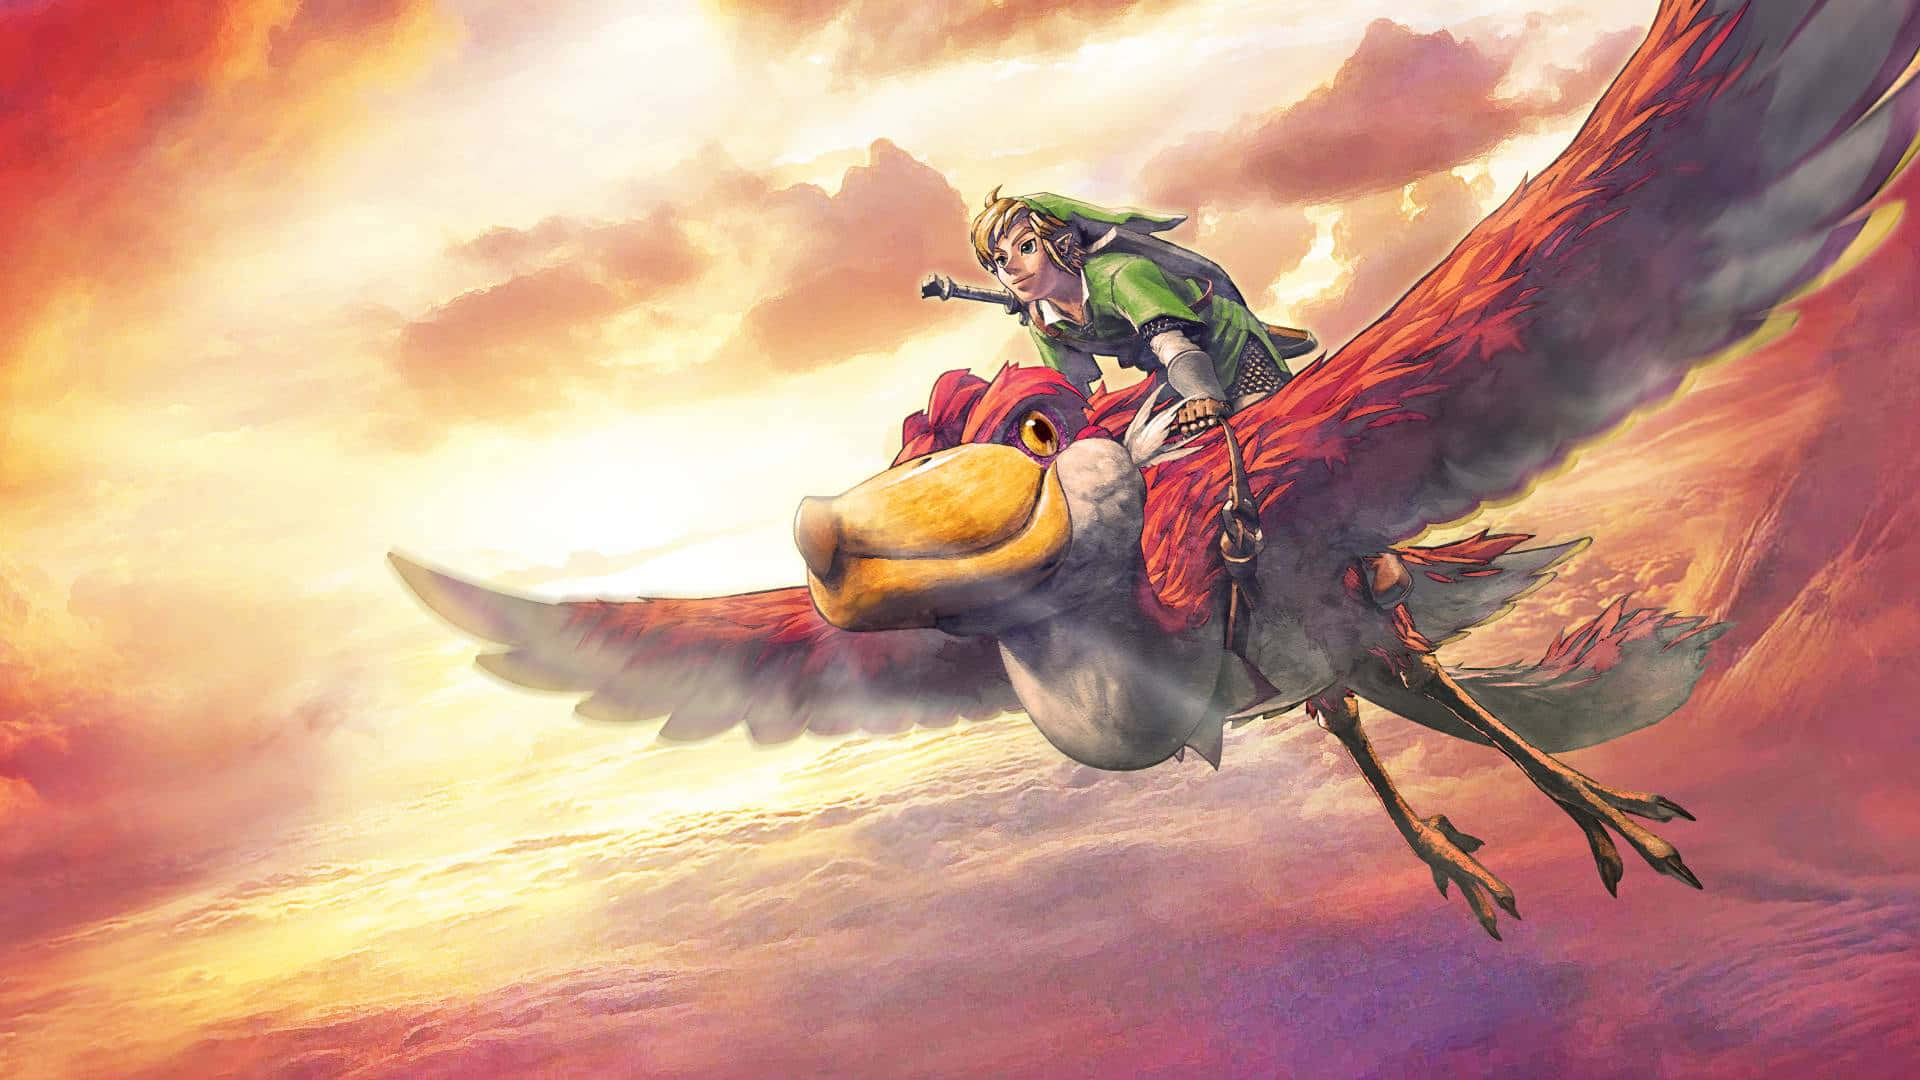 The Legend of Zelda: Skyward Sword Action Adventure Scene Wallpaper